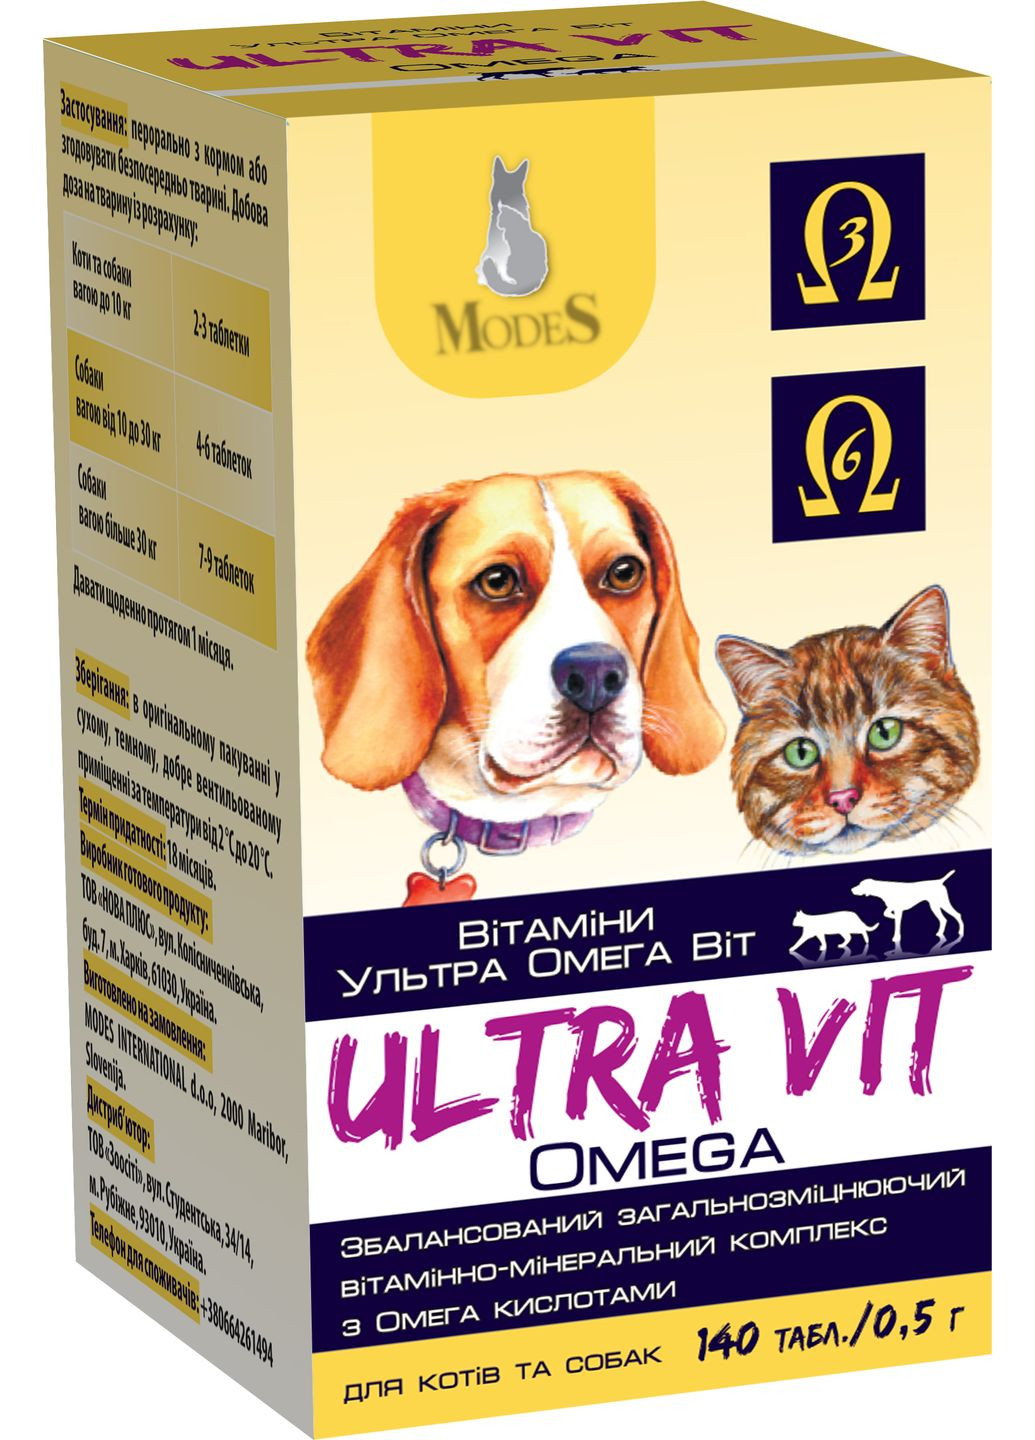 Витаминноминеральный комплекс Ultra Omega Vit для кошек и собак 140 таблеток по 0.5 г (4820254820249) ModeS (279563745)